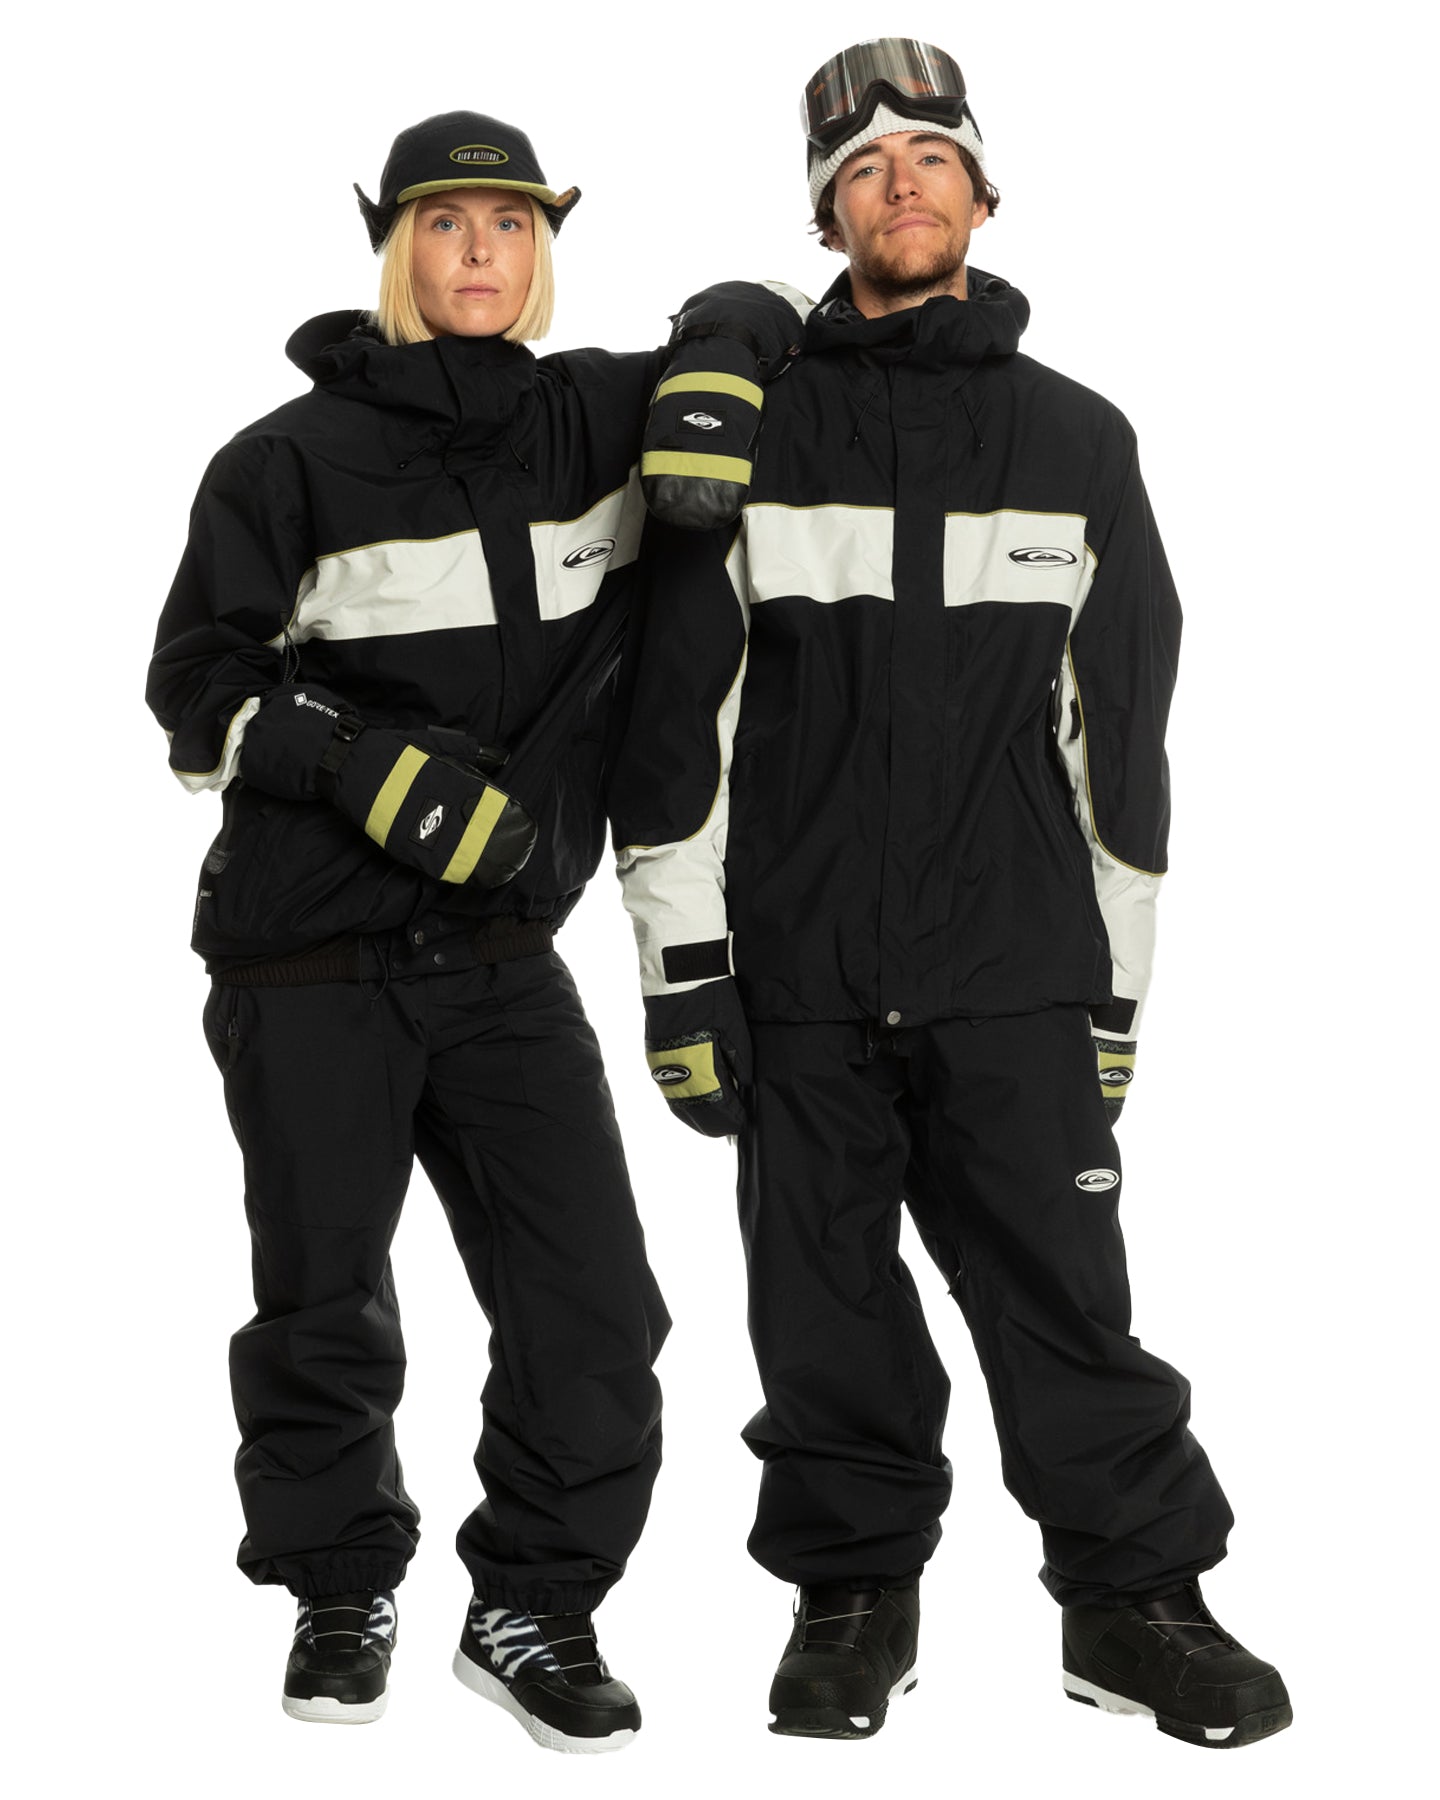 Quiksilver Men's Snow Down Technical Cargo Pants - True Black Men's Snow Pants - SnowSkiersWarehouse